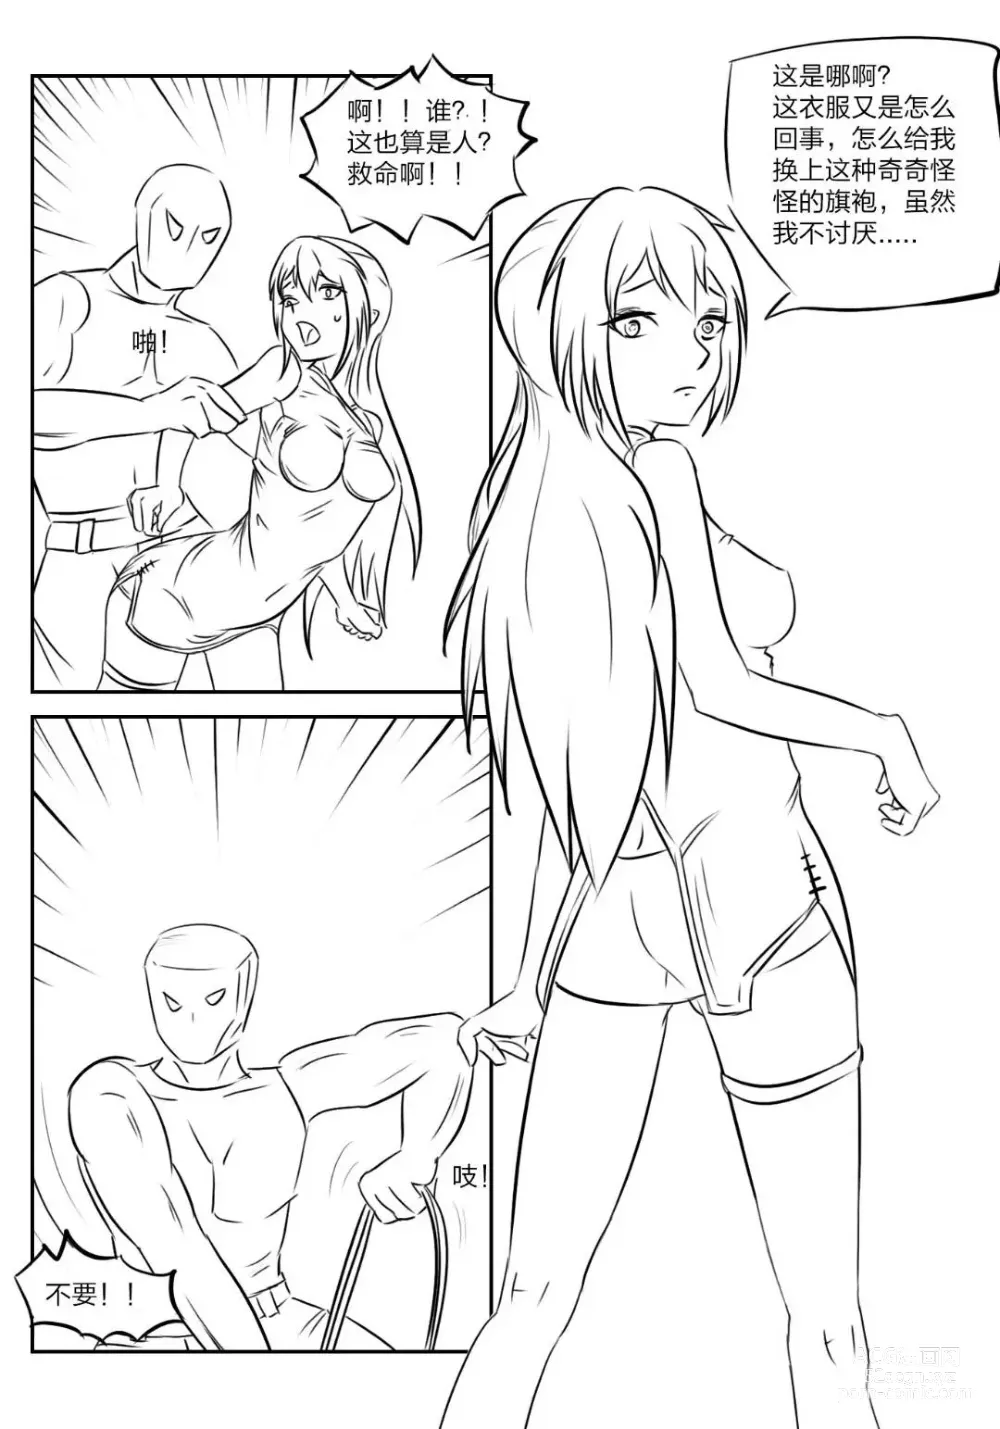 Page 4 of doujinshi 《被困游戏世界》